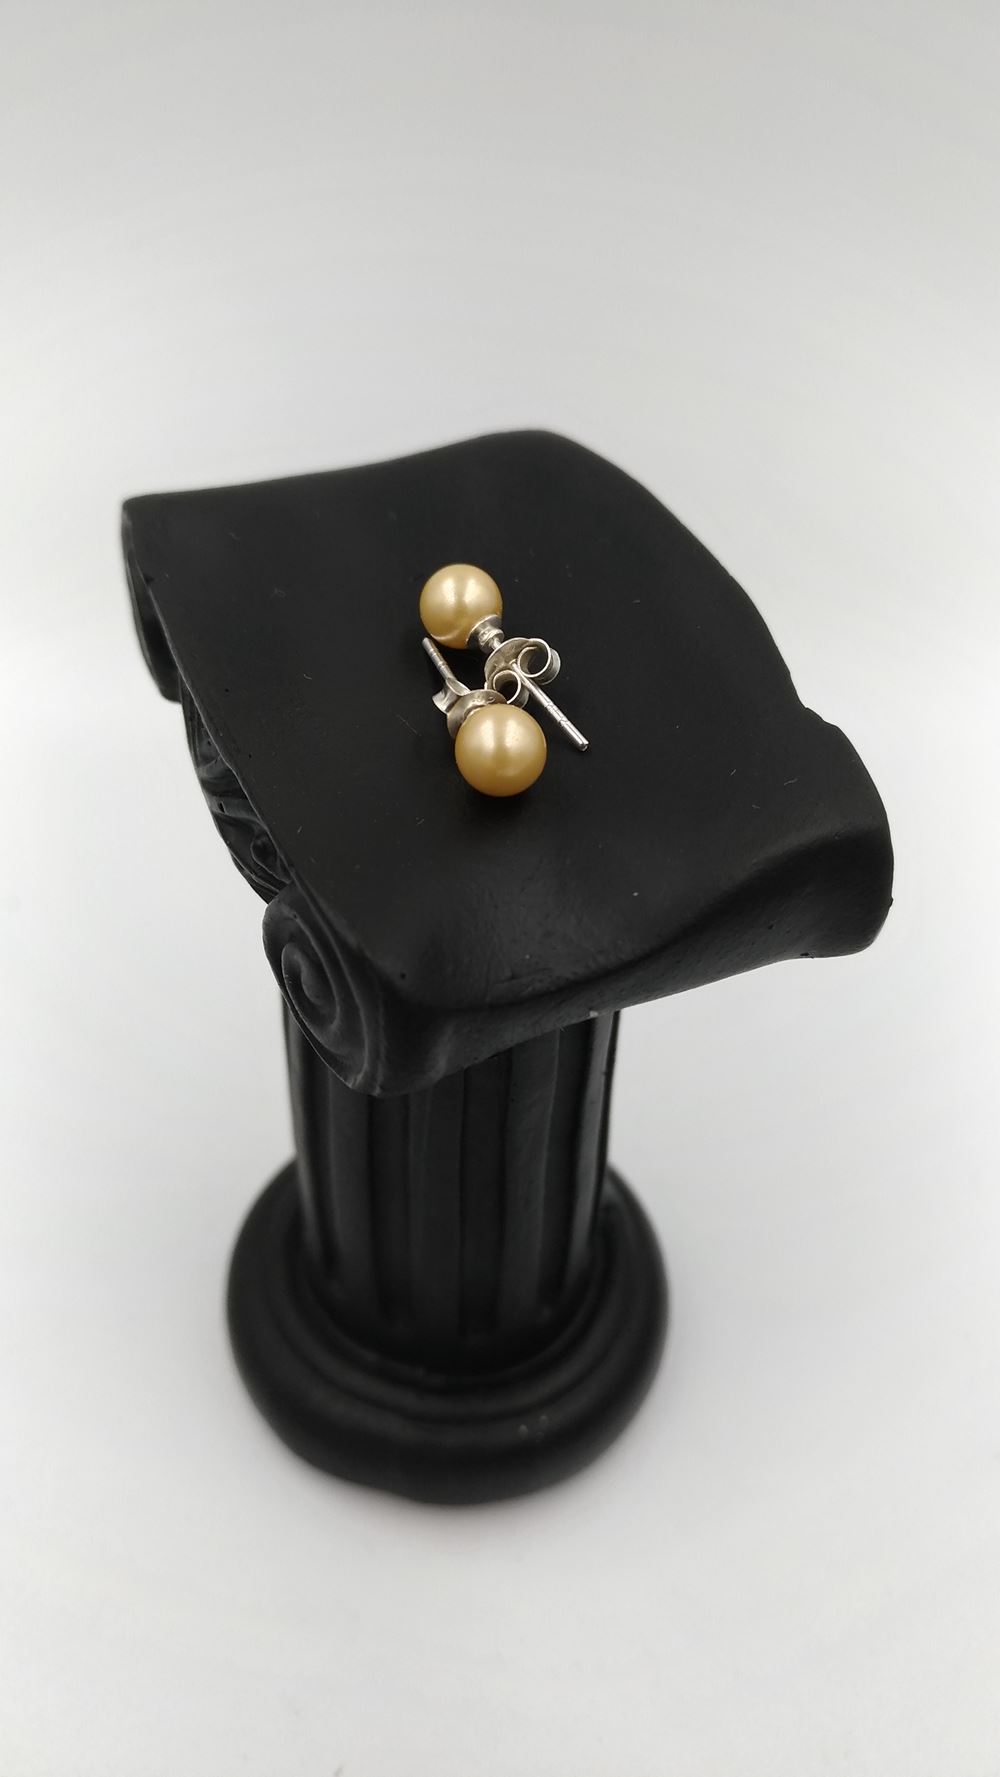 boucle-oreille-femme-perle-de-verre-or-argent-925-6-mm